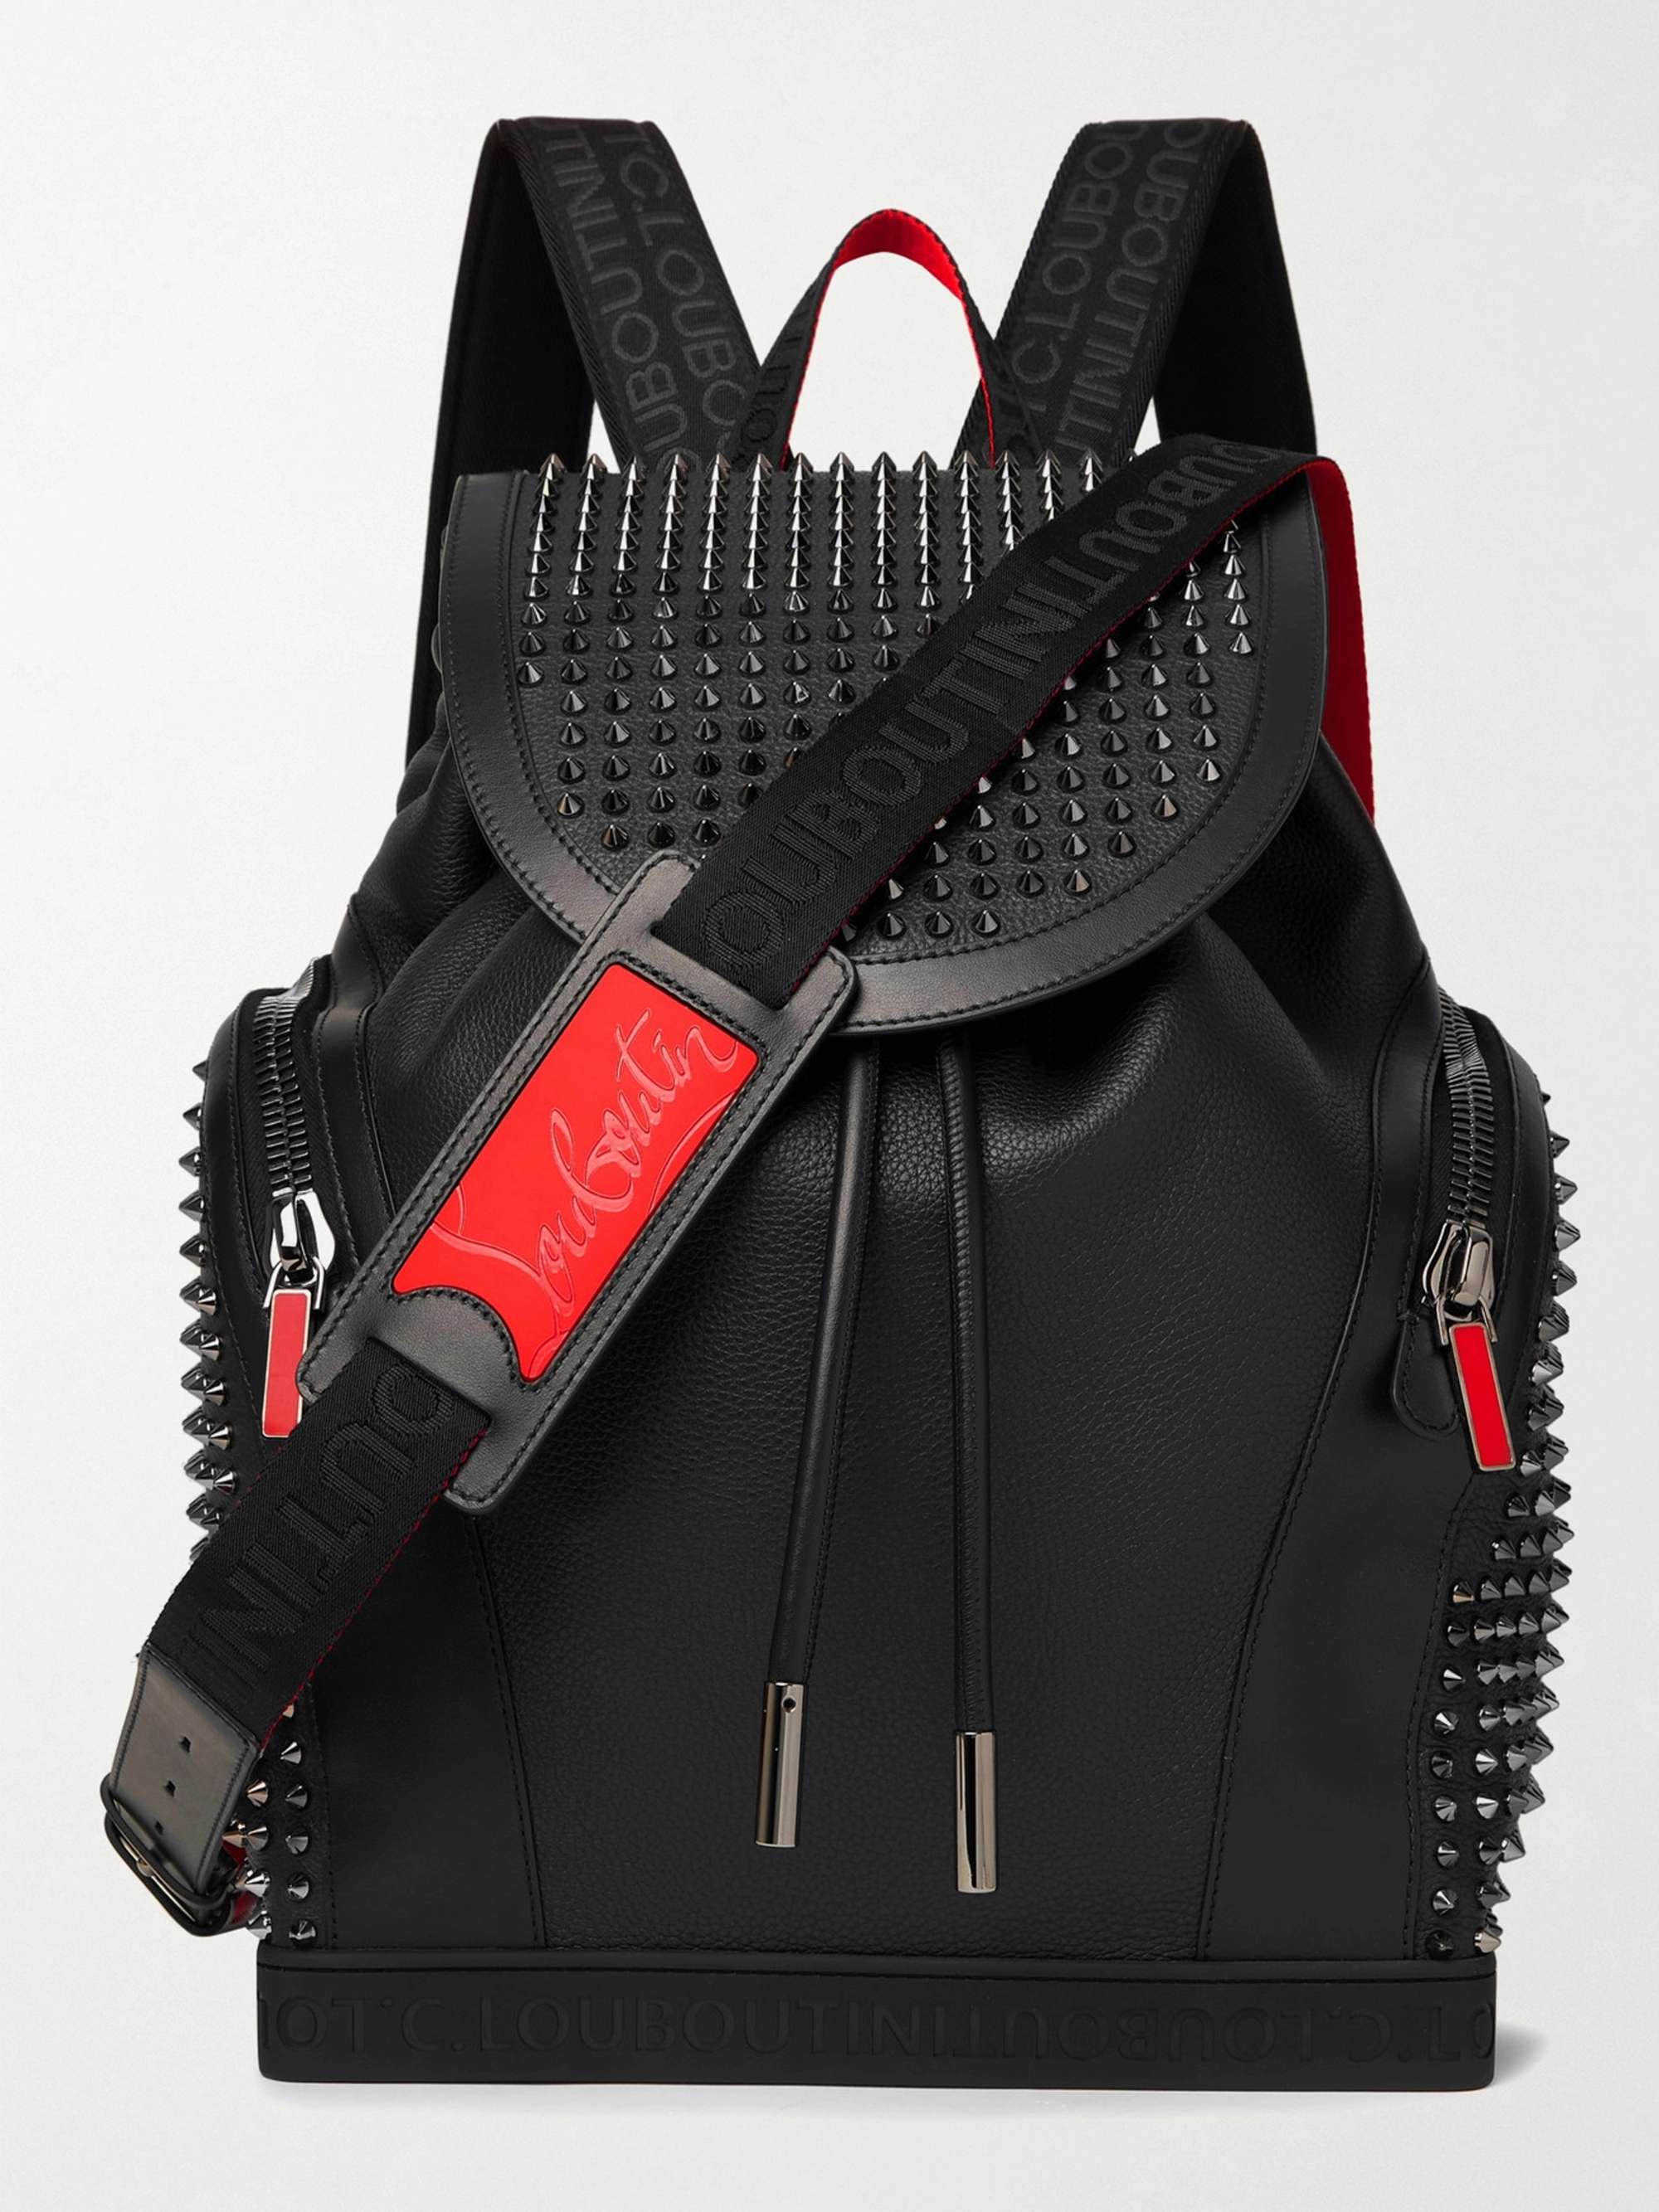 Designer bags for men - Christian Louboutin United States